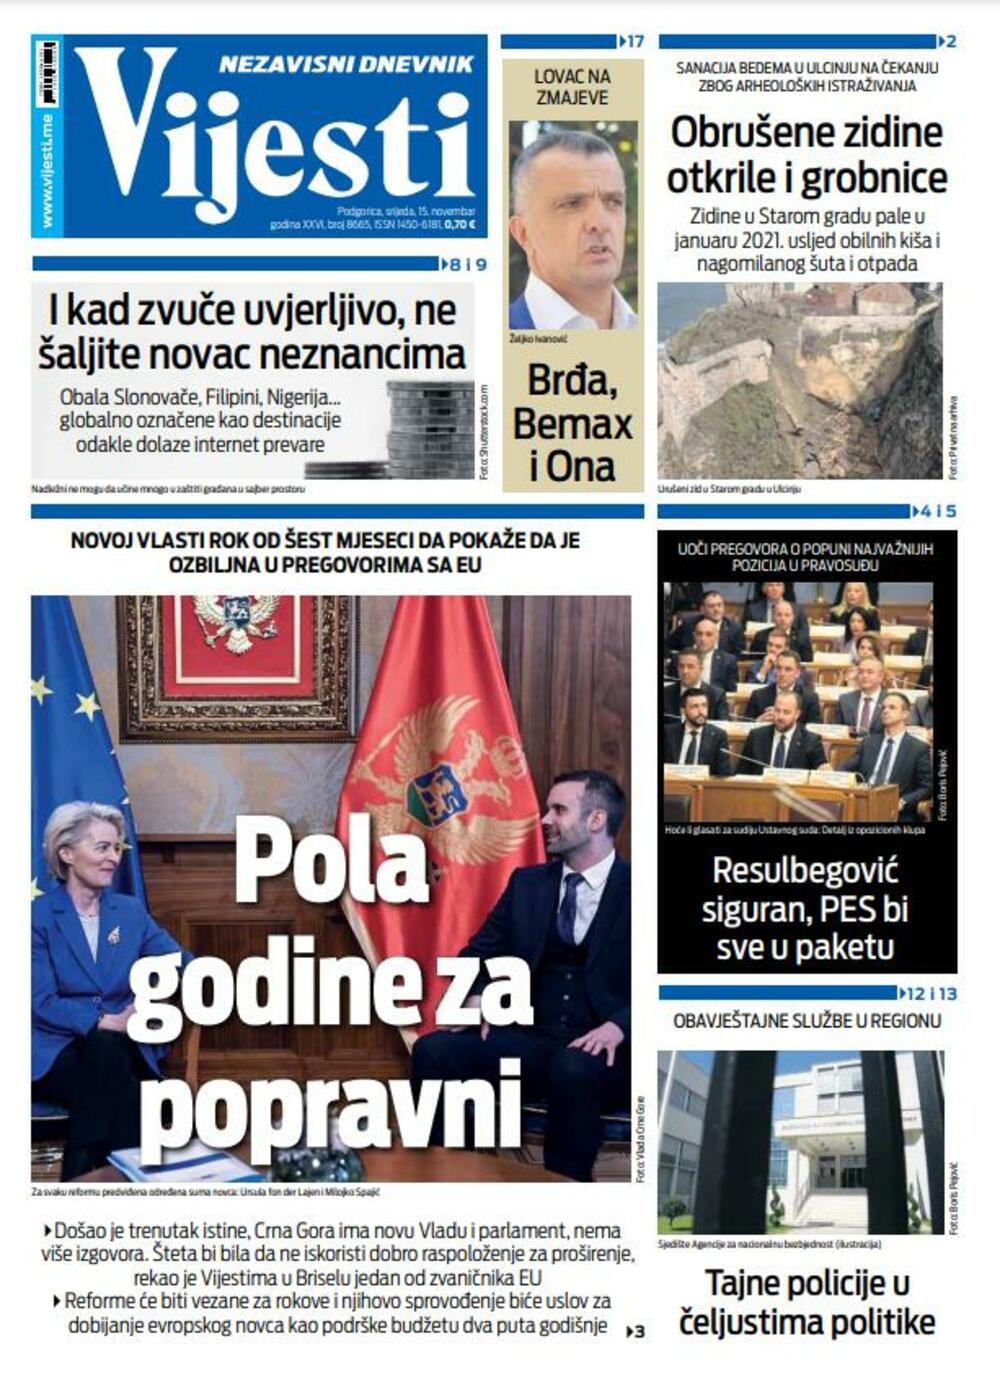 Naslovna strana "Vijesti" za 15. novembar 2023., Foto: Vijesti